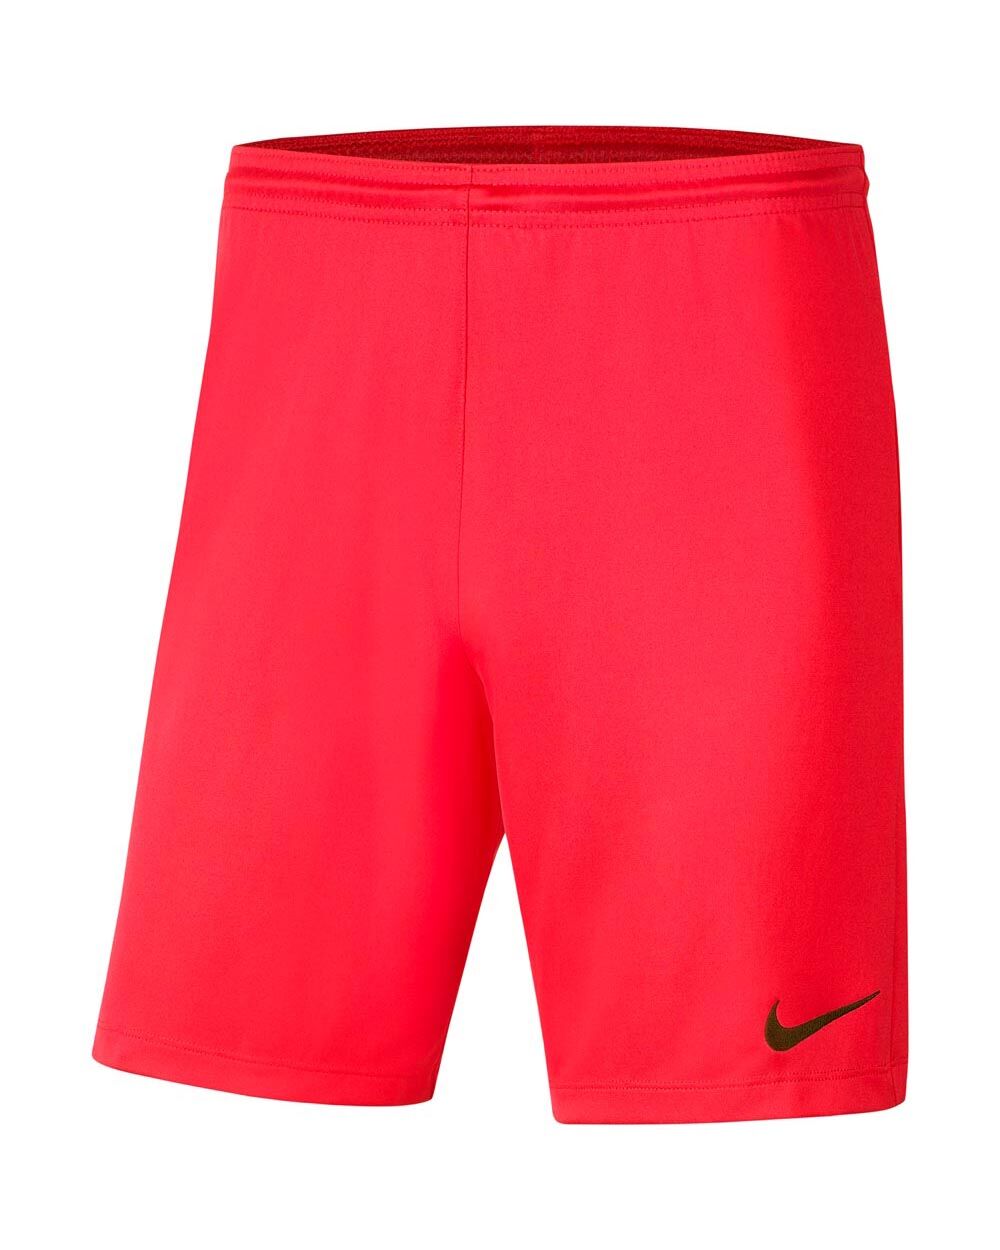 Nike Pantaloncini Park III Rosso Crimson Uomo BV6855-635 S